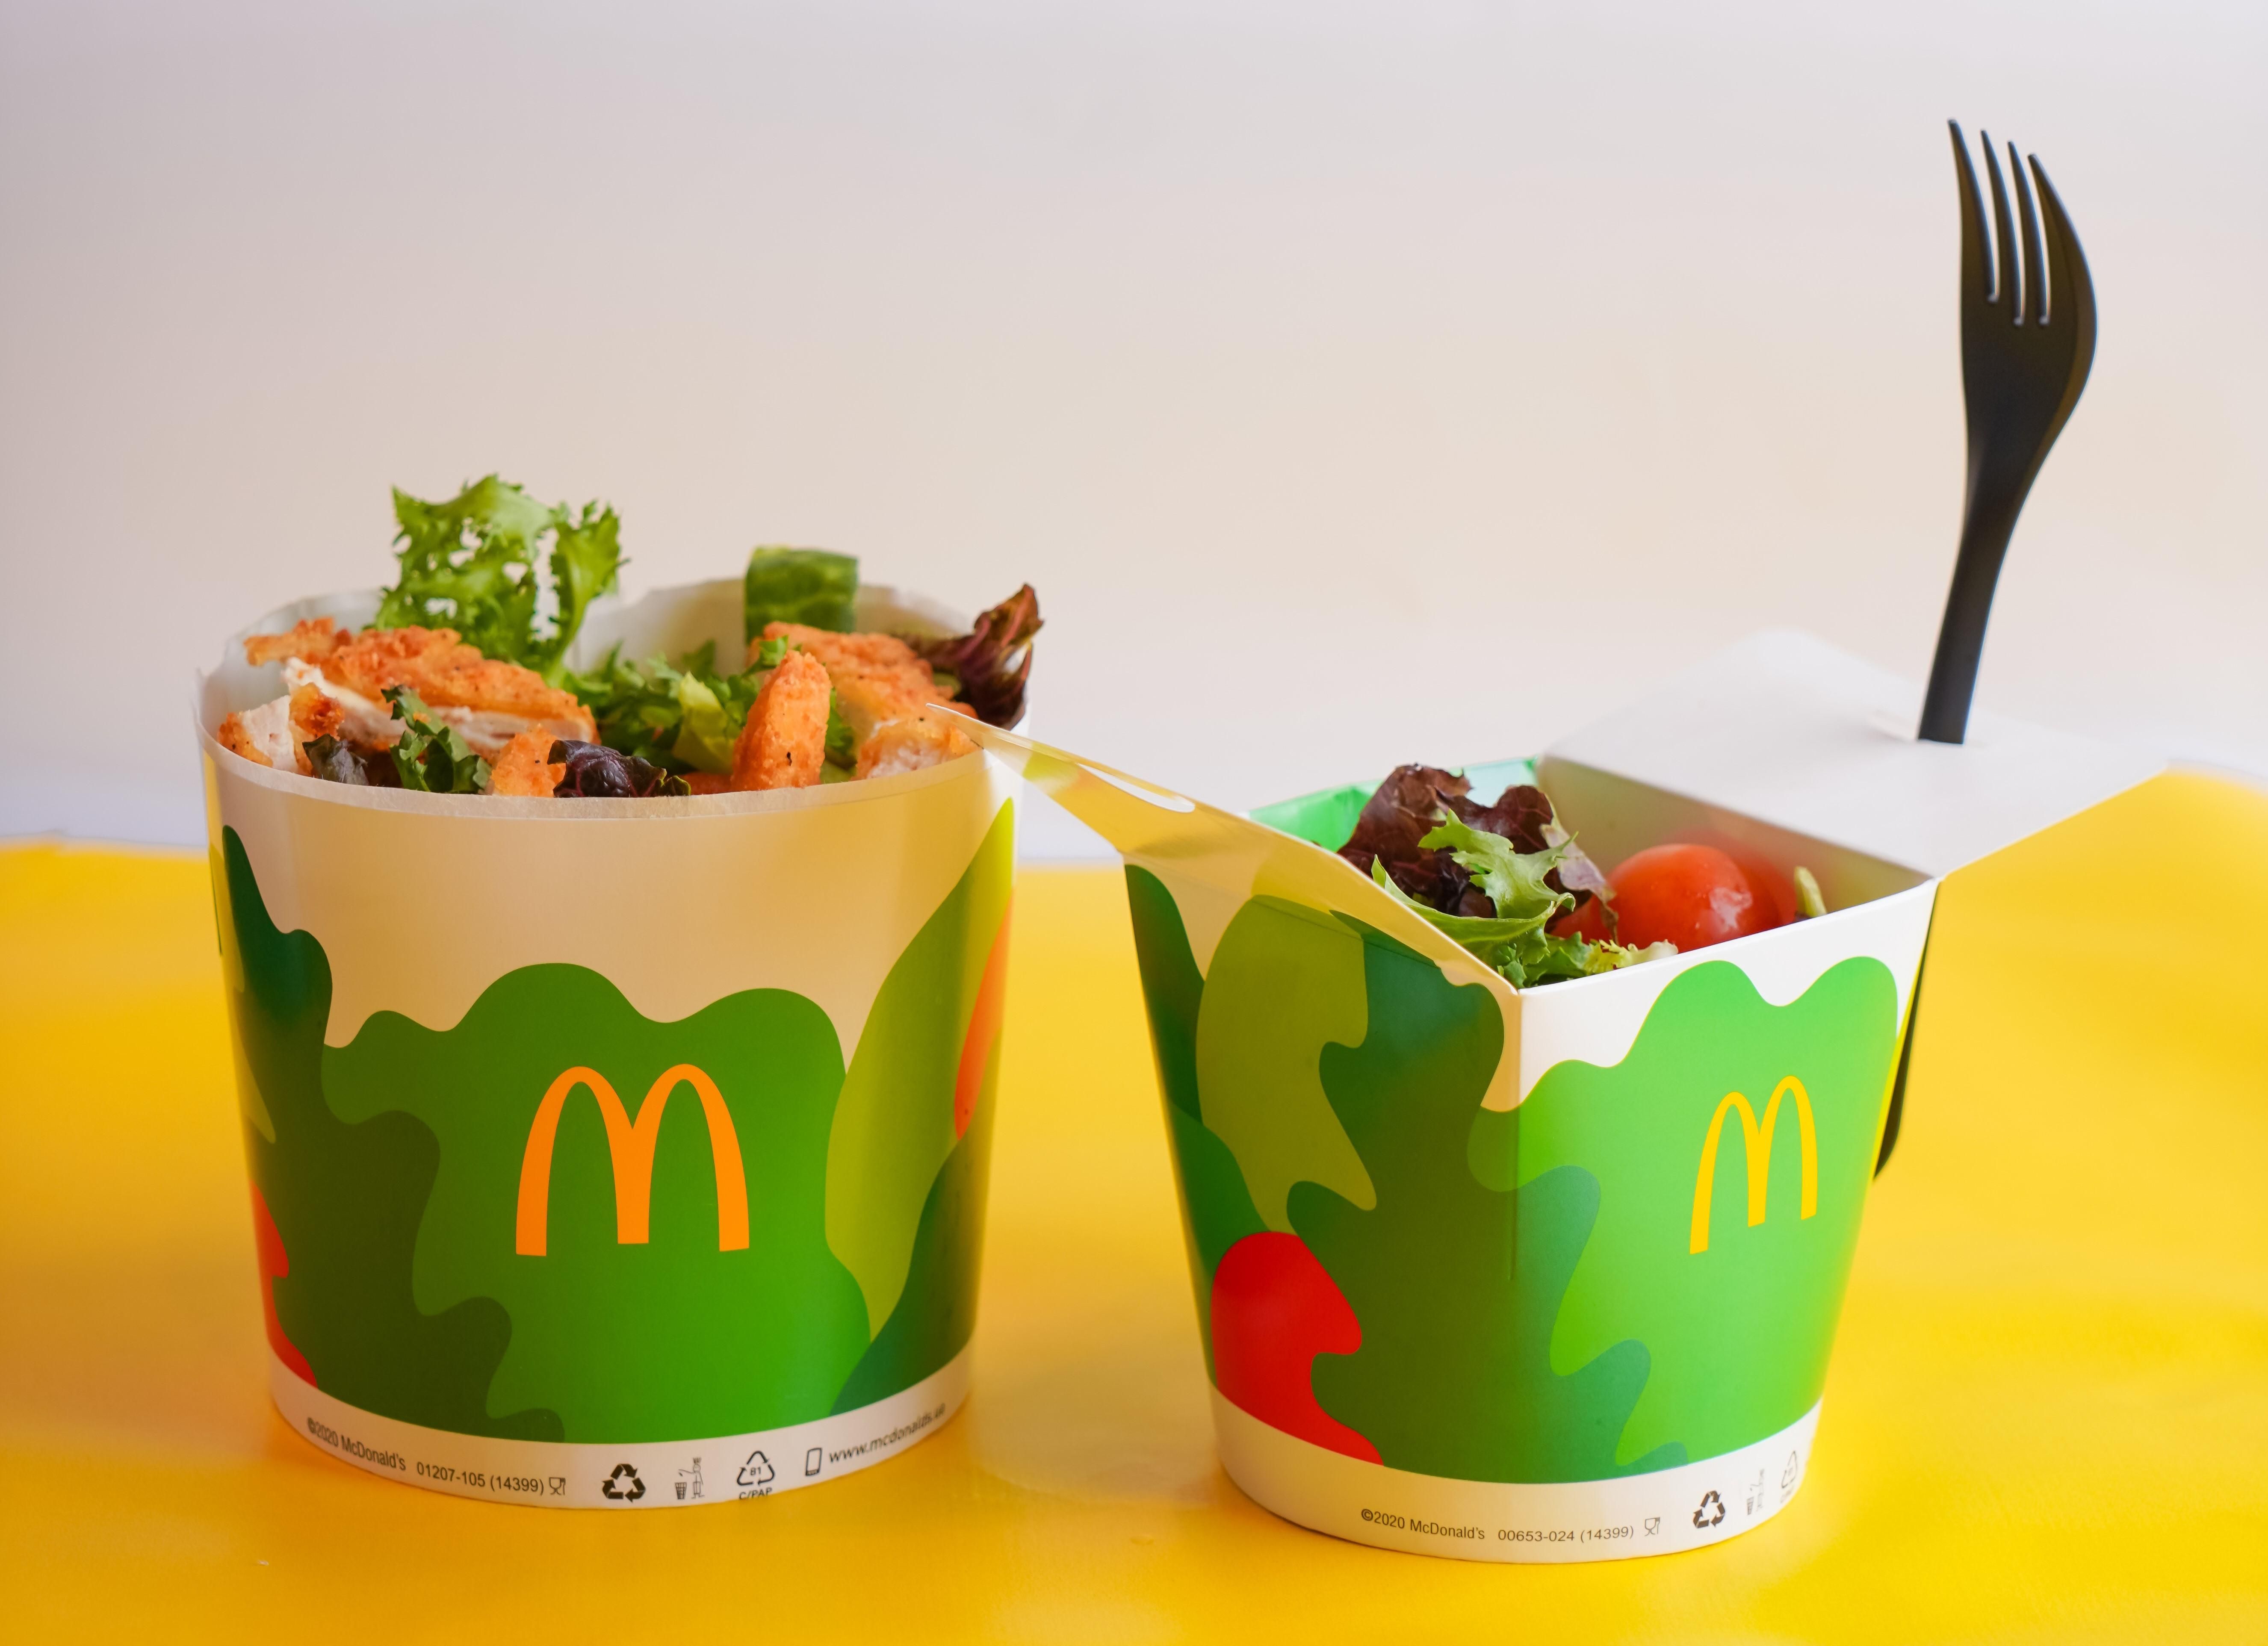 Легкі та поживні: що потрібно знати про салати в ресторанах McDonald's - Тренди